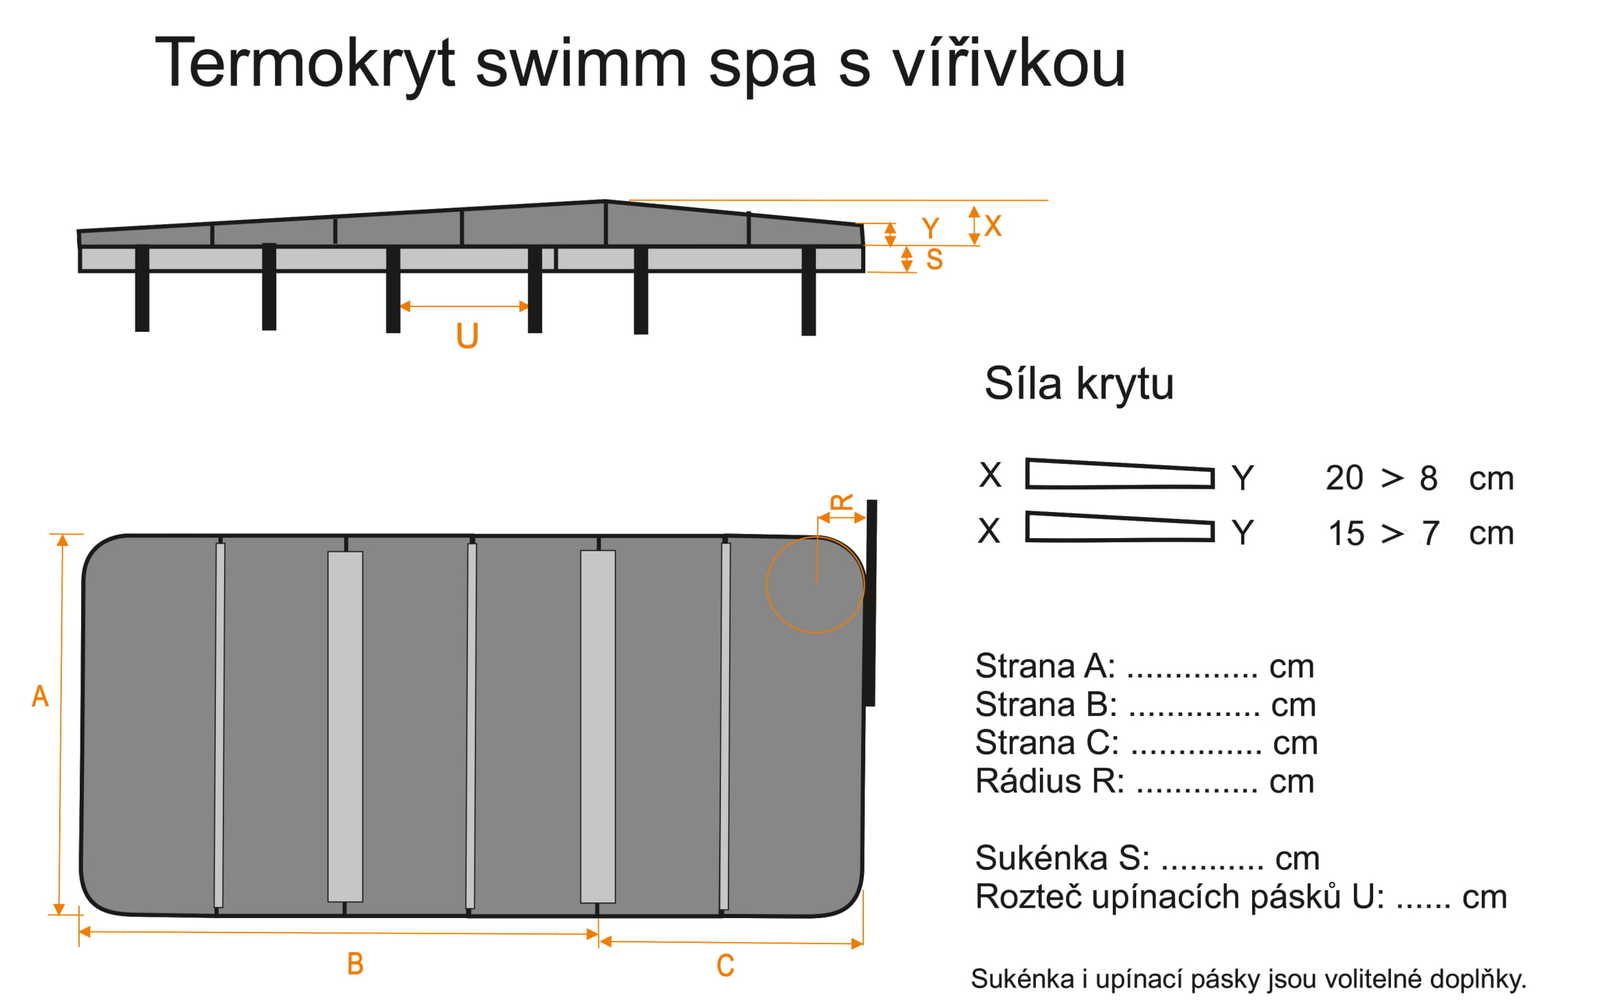 Couverture isothermique swimm spa avec bain à tourbillons